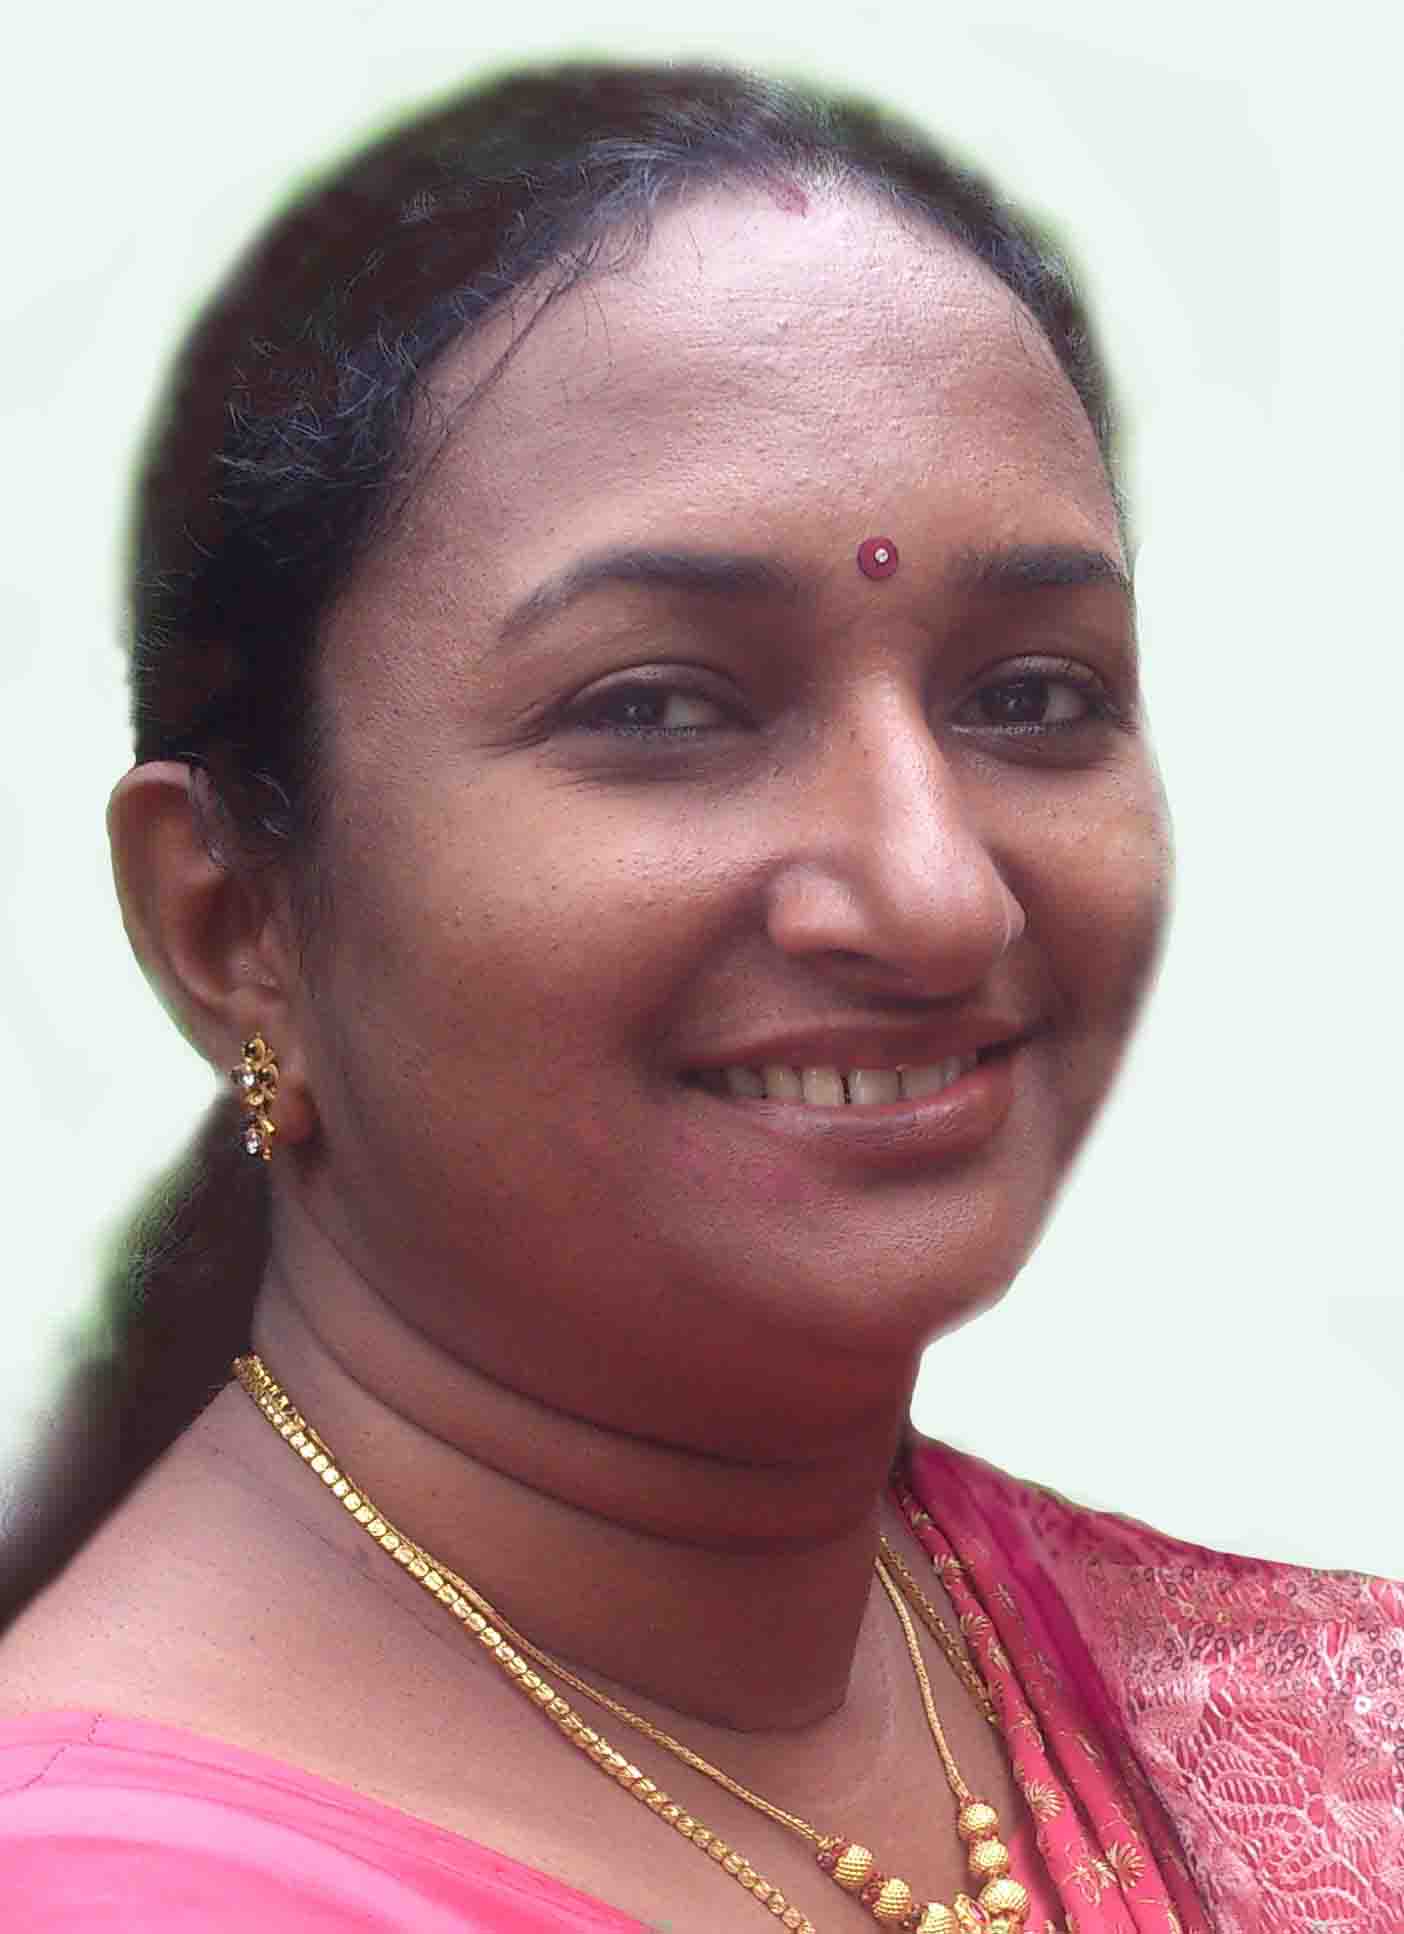 Jyoti P